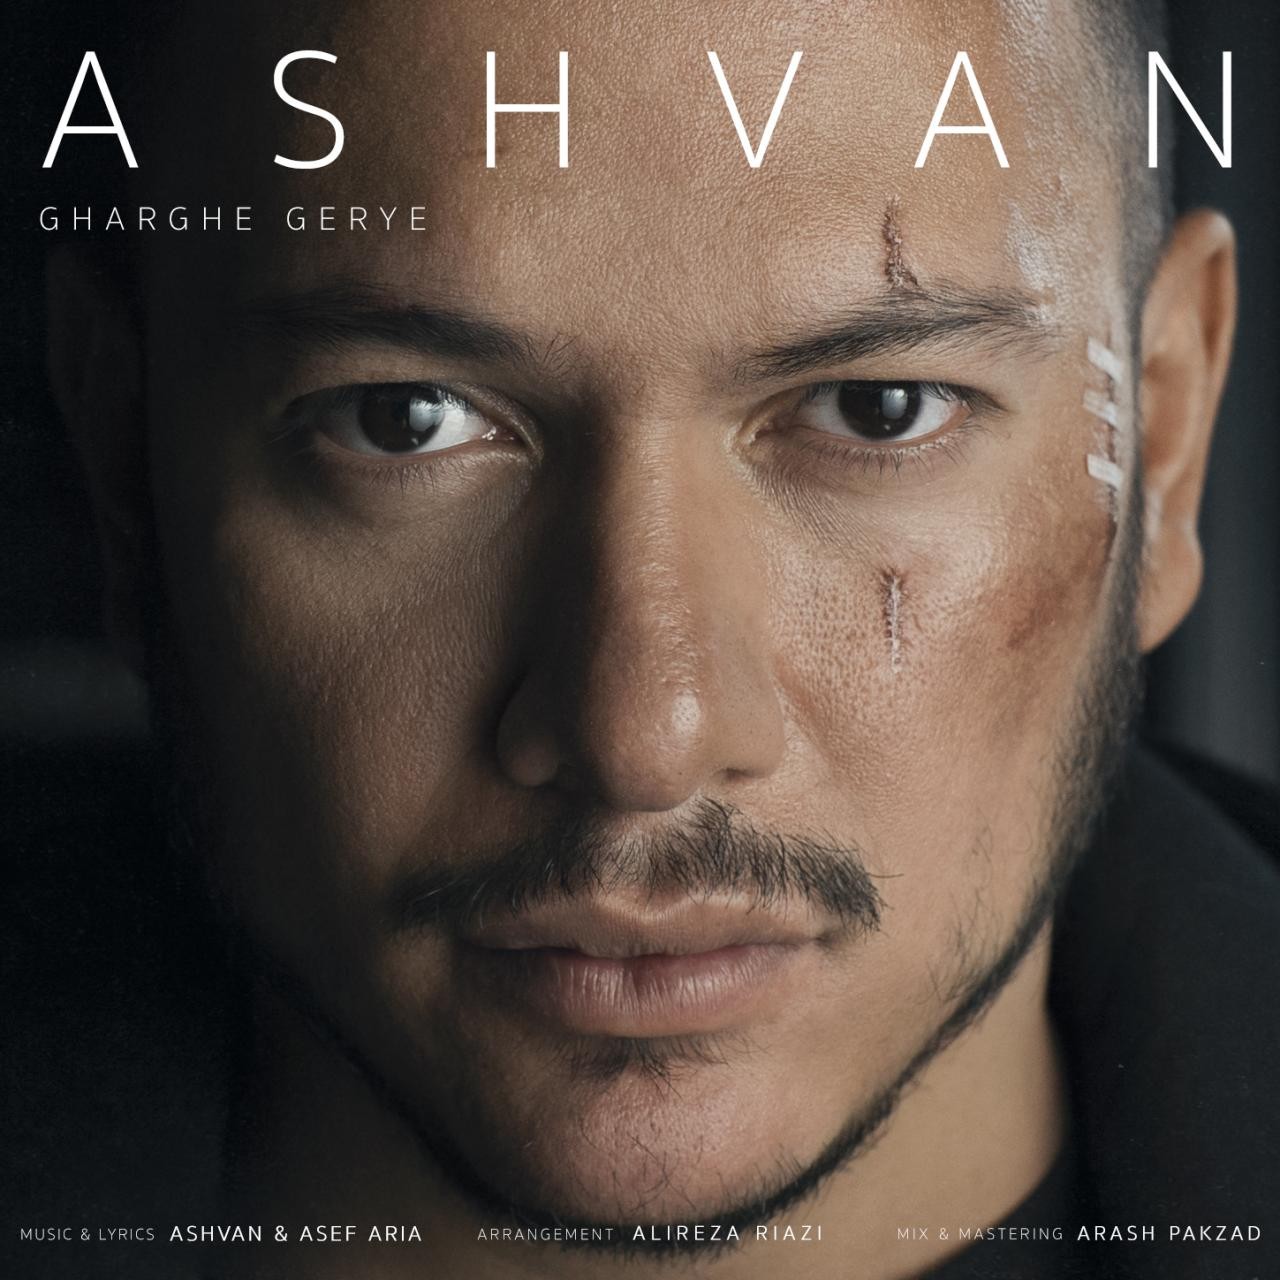  دانلود آهنگ جدید اشوان - غرق گریه | Download New Music By Ashvan - Gharghe Gerye